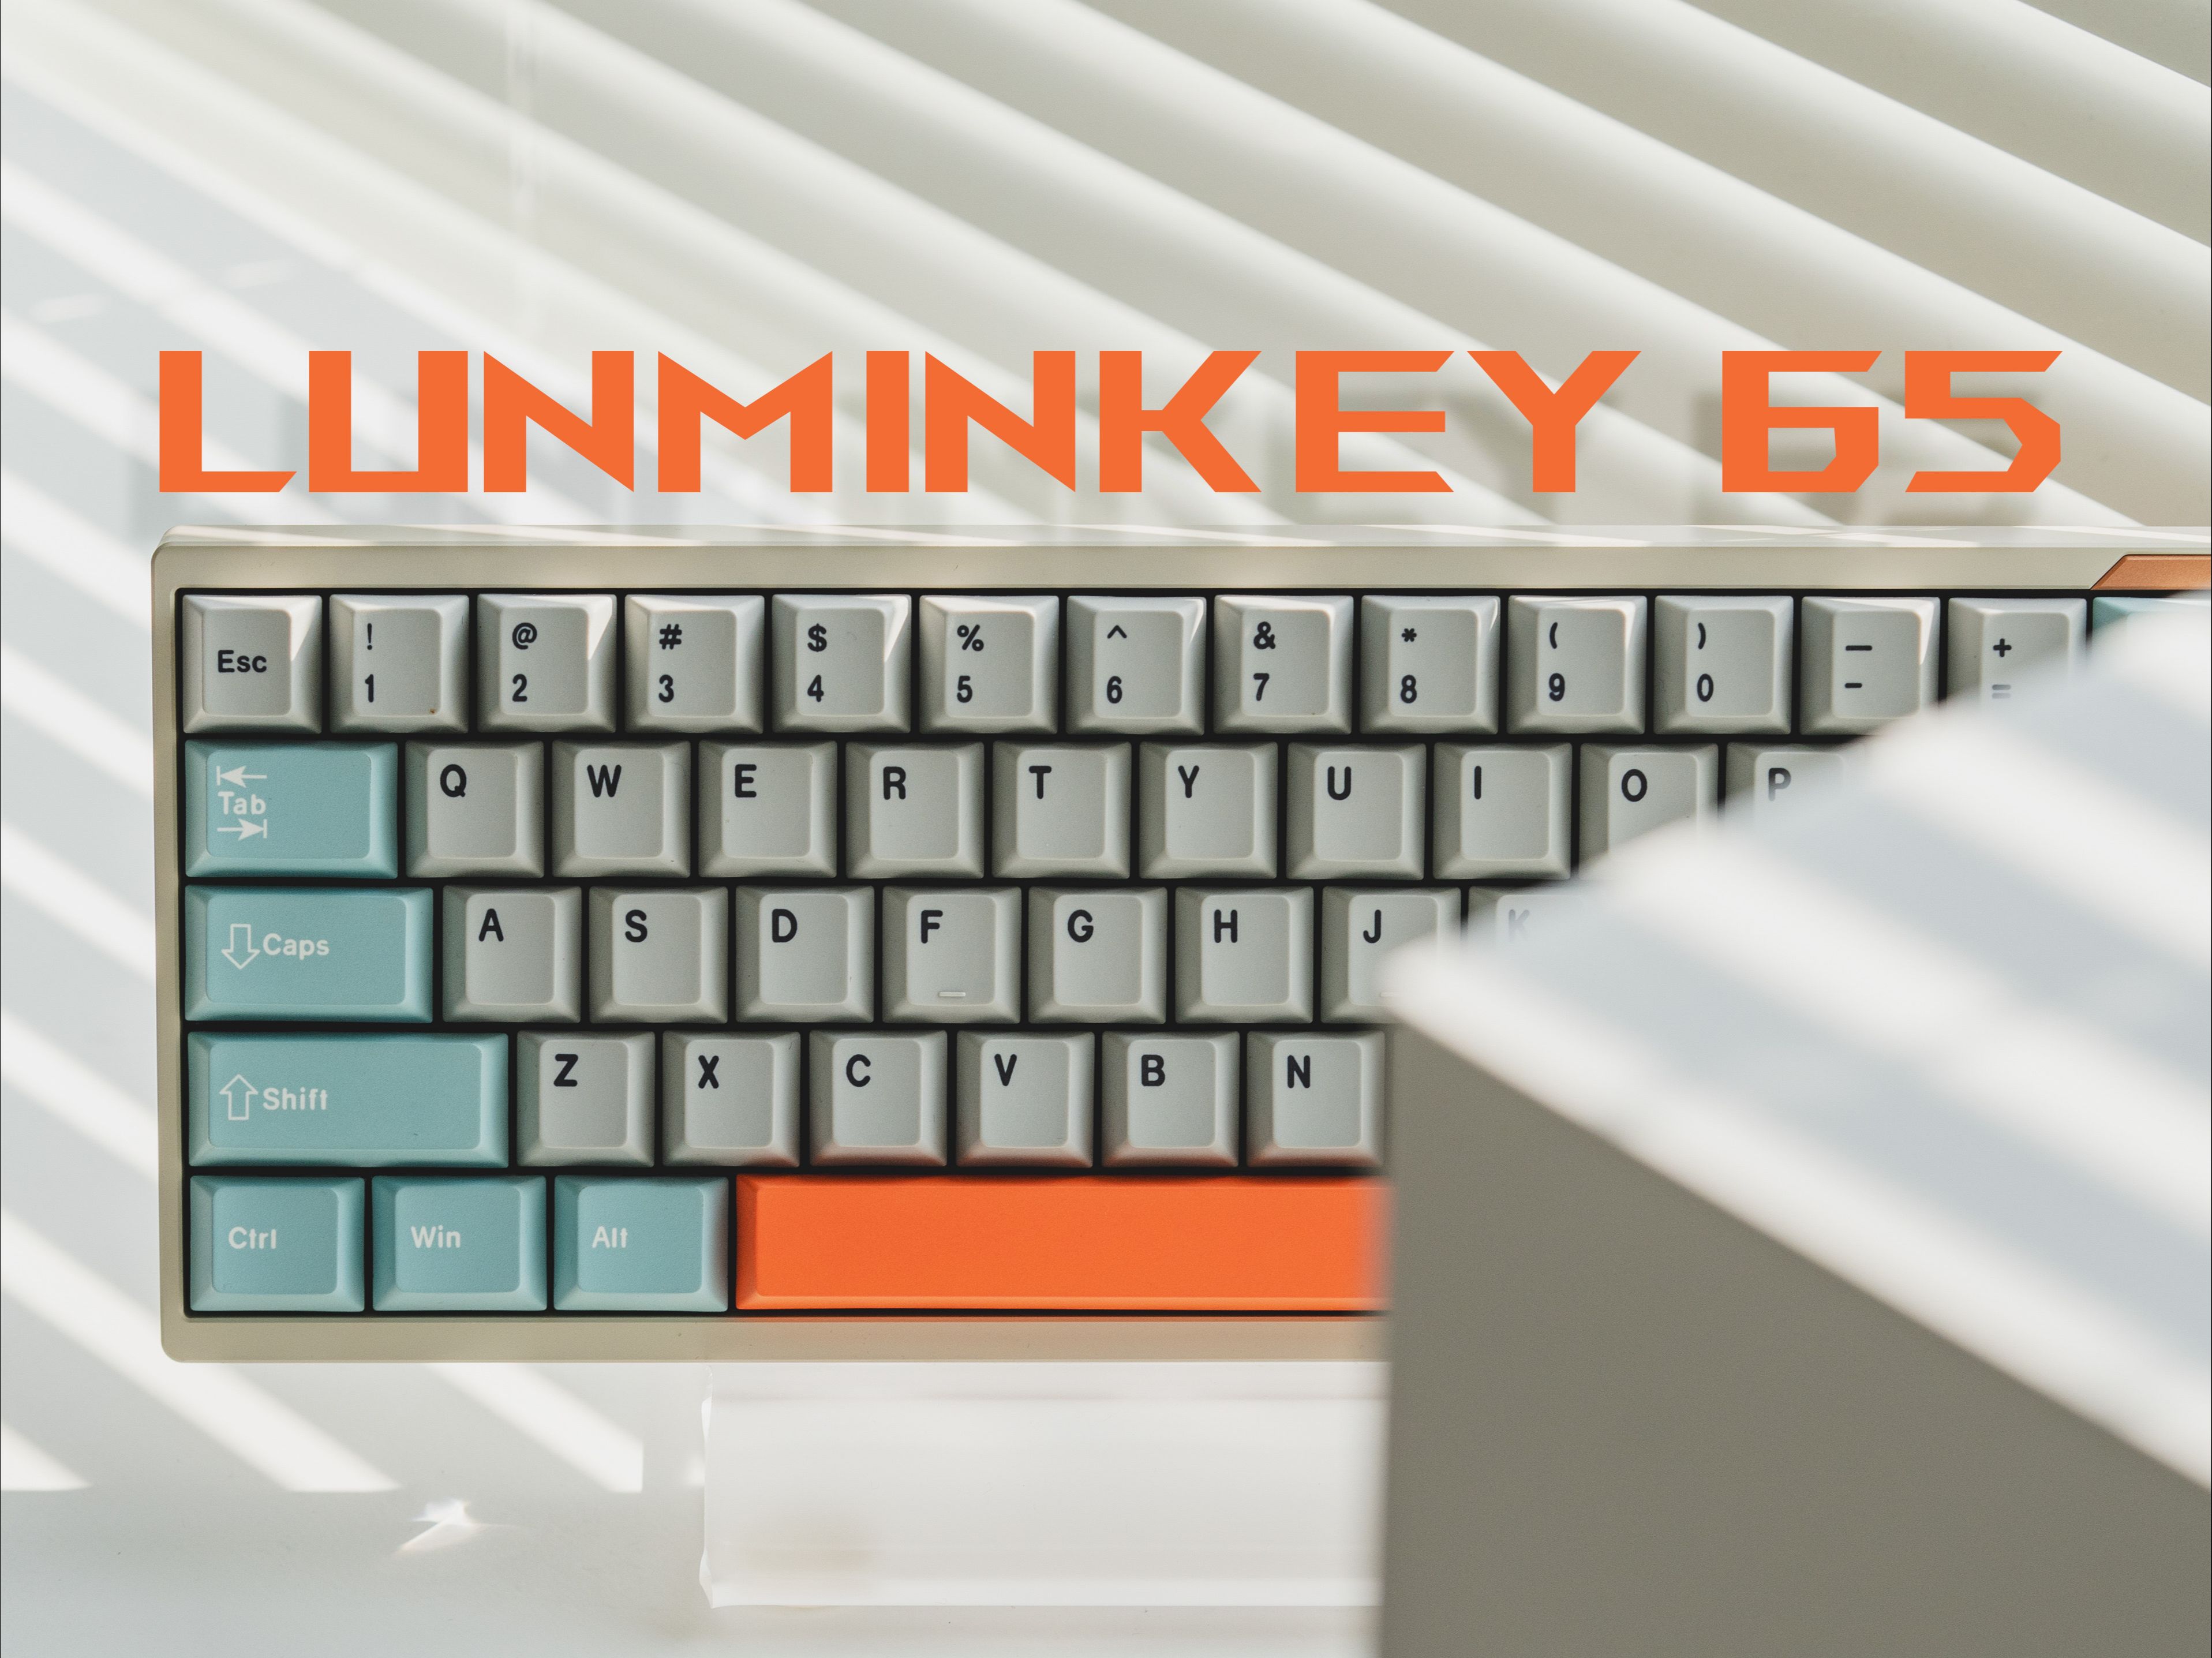 千元成品客制化—Luminkey 65丨Luminkey丨苍原轴｜沉浸式开箱组装丨机械键盘丨打字音